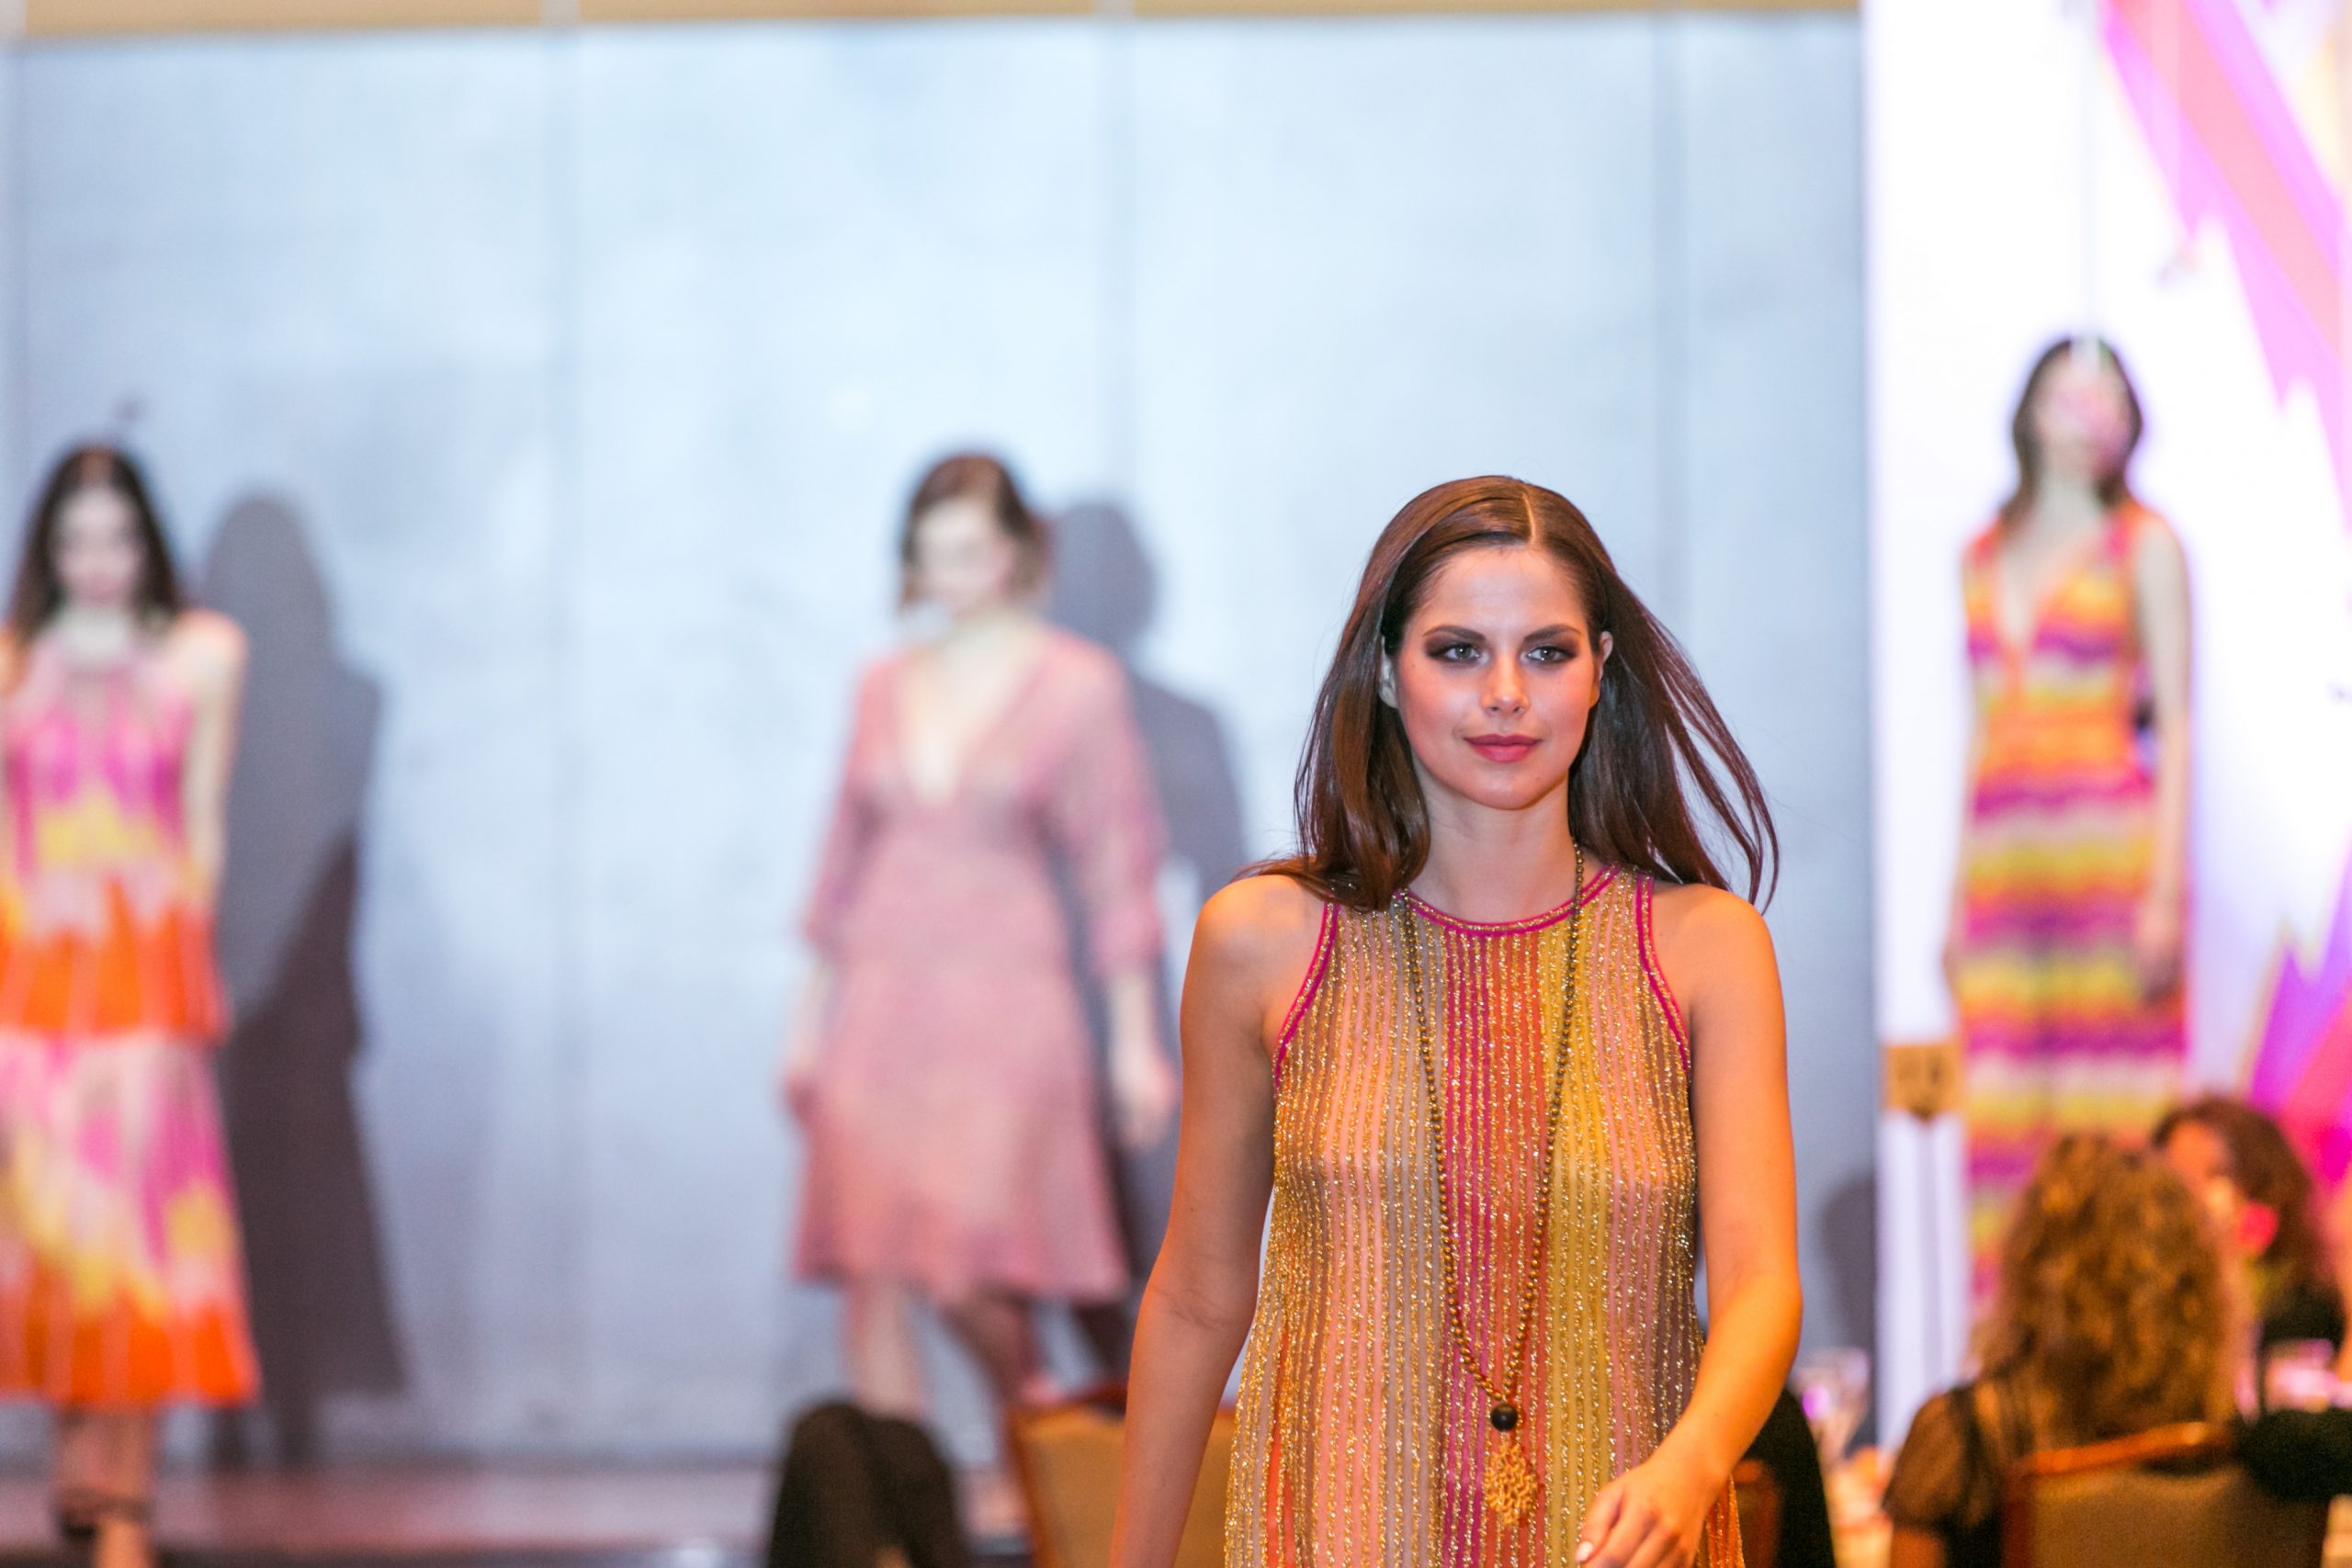 Ιταλικός οίκος μόδας επέλεξε τη Θεσσαλονίκη για να… παρουσιάσει την καινούρια του κολεξιόν- Λαμπερές παρουσίες (ΦΩΤΟ)